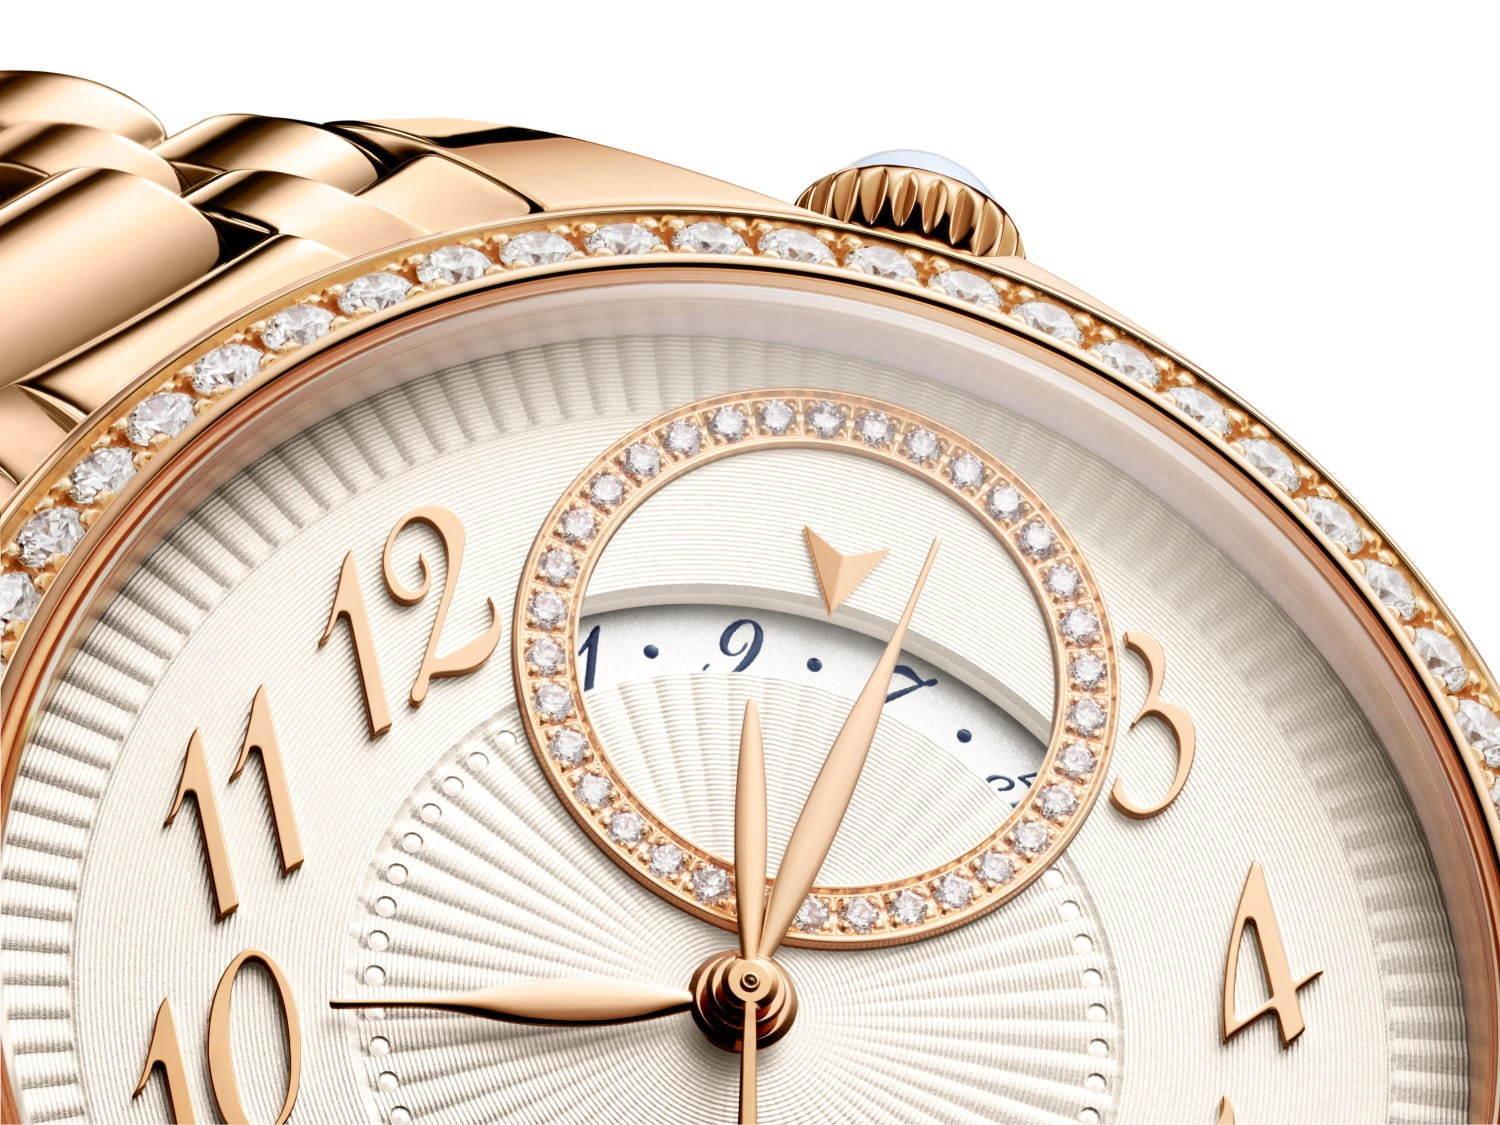 ヴァシュロン・コンスタンタンのレディース腕時計「エジェリー」新作、文字盤にプリーツ模様を施して コピー